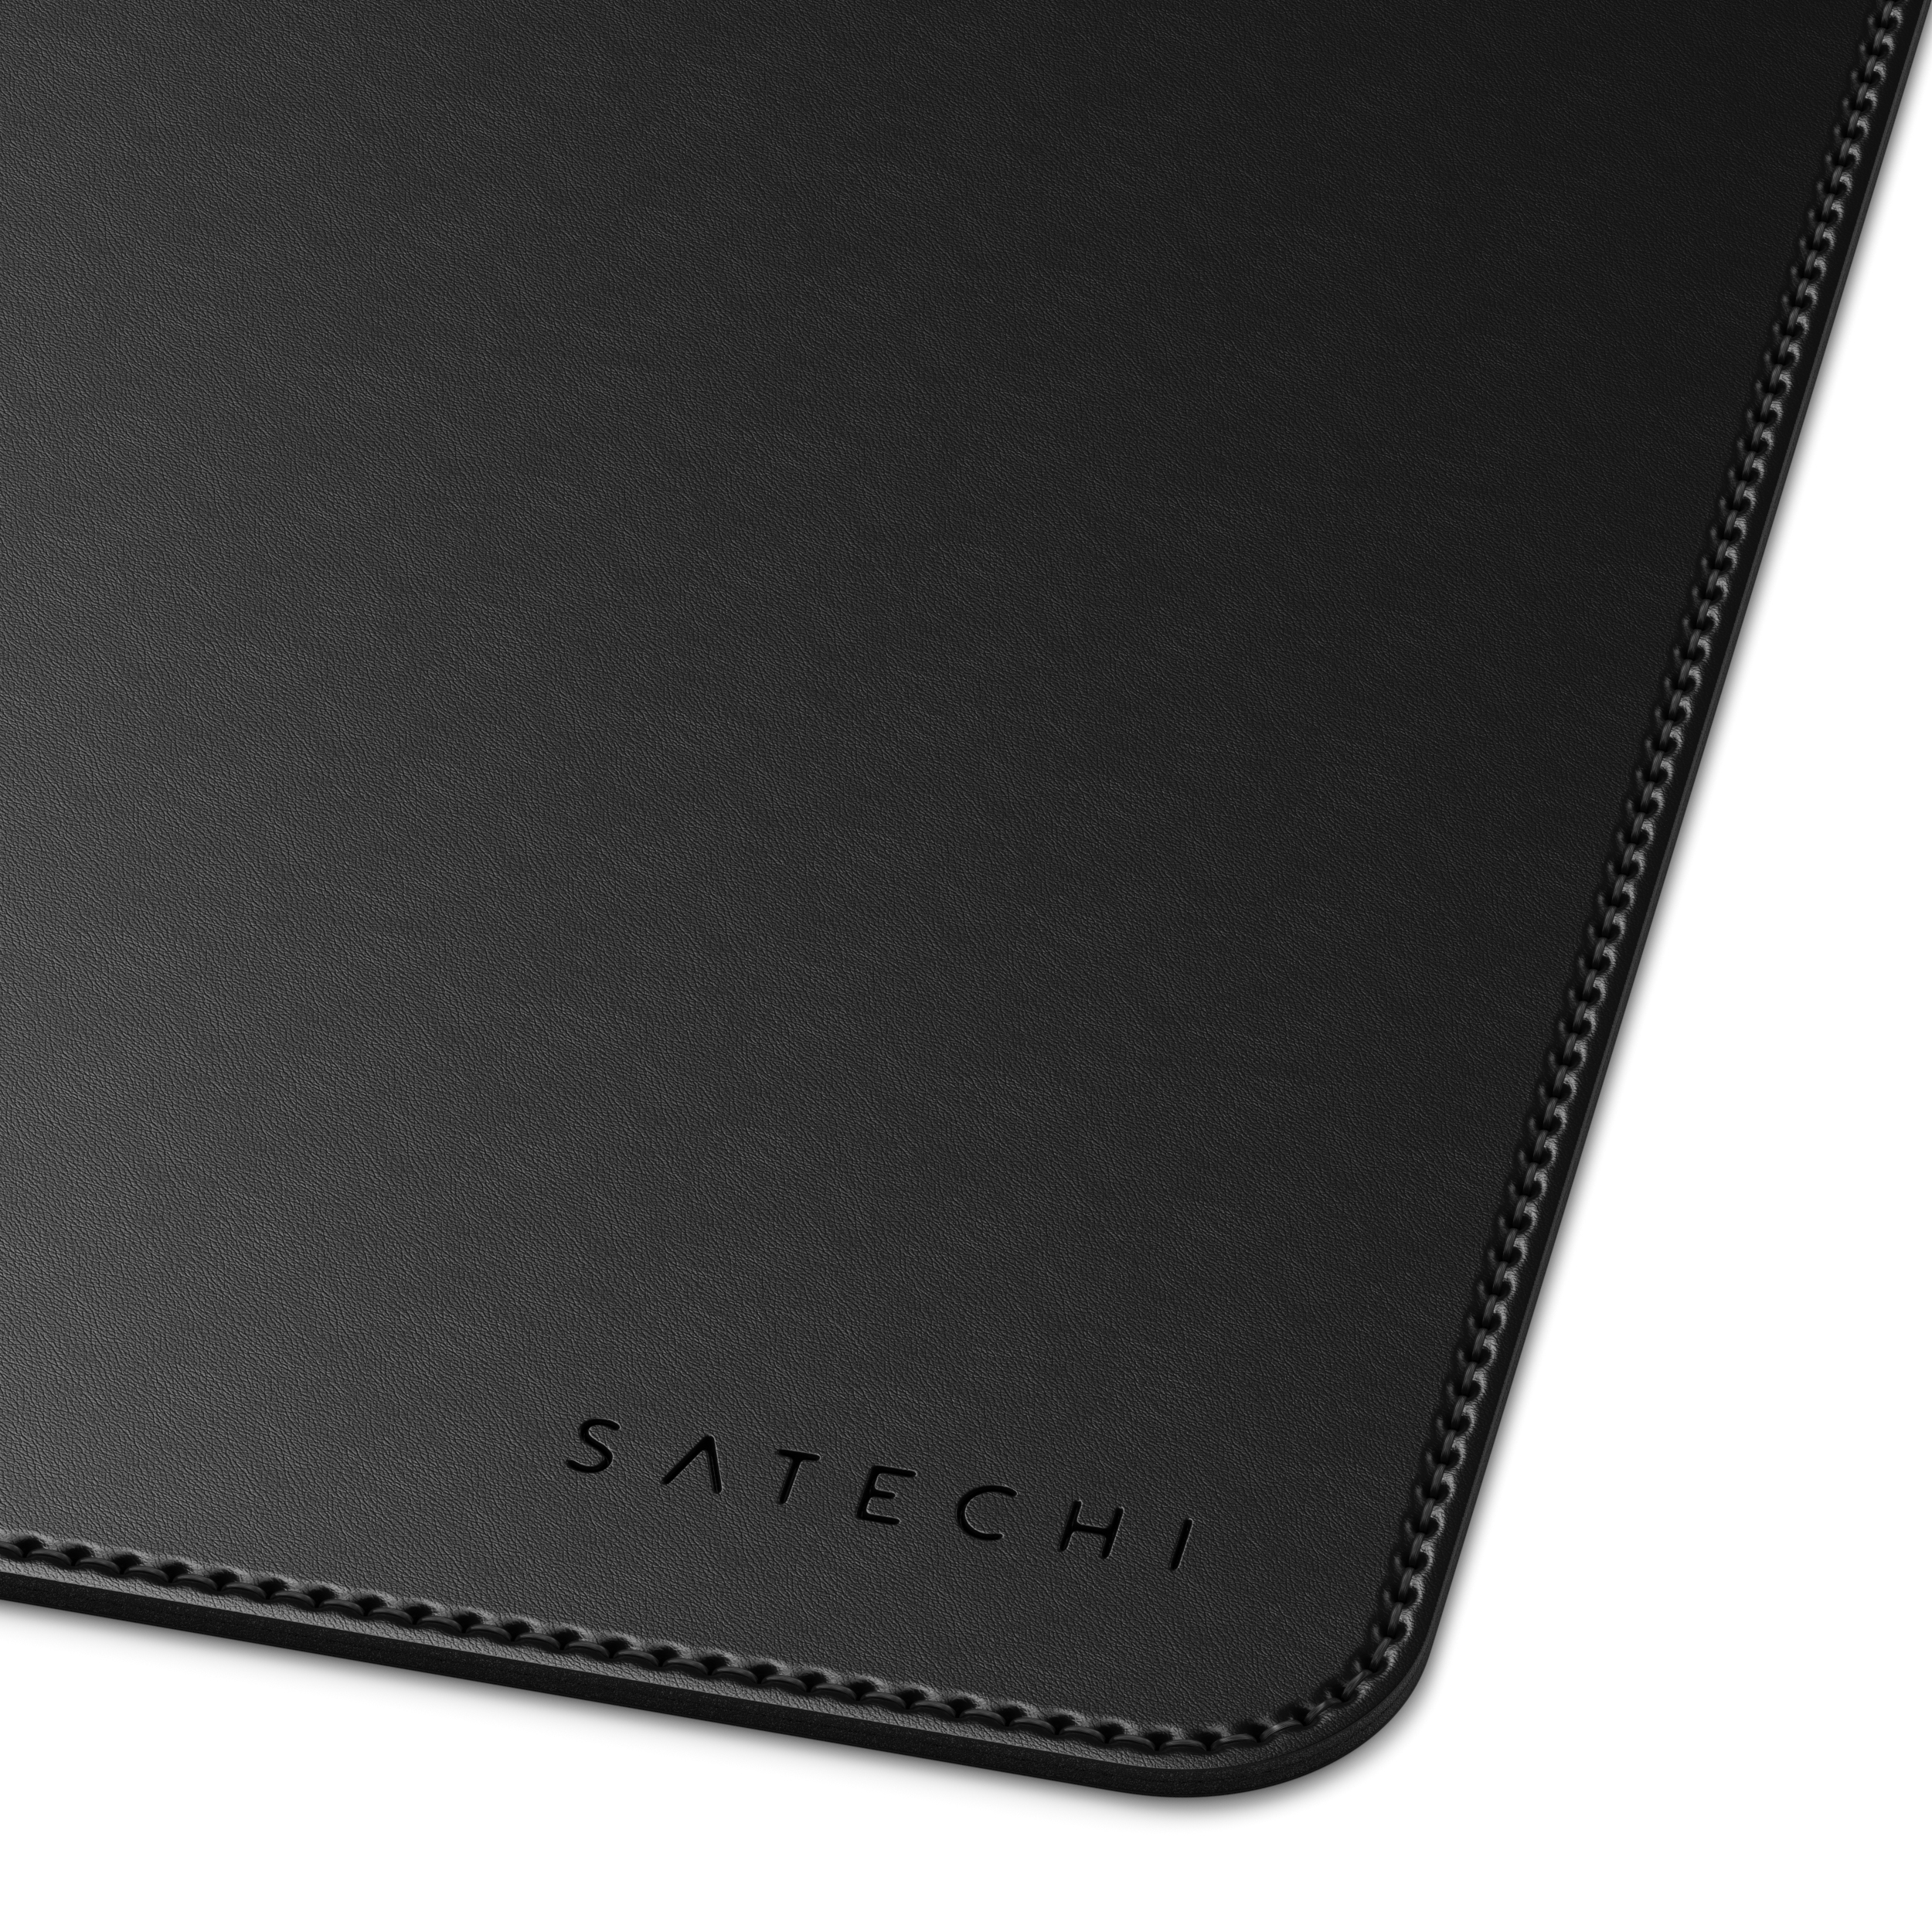 SATECHI Eco-Leather Deskmate Mousepad cm - Black (31 58,42 x cm)